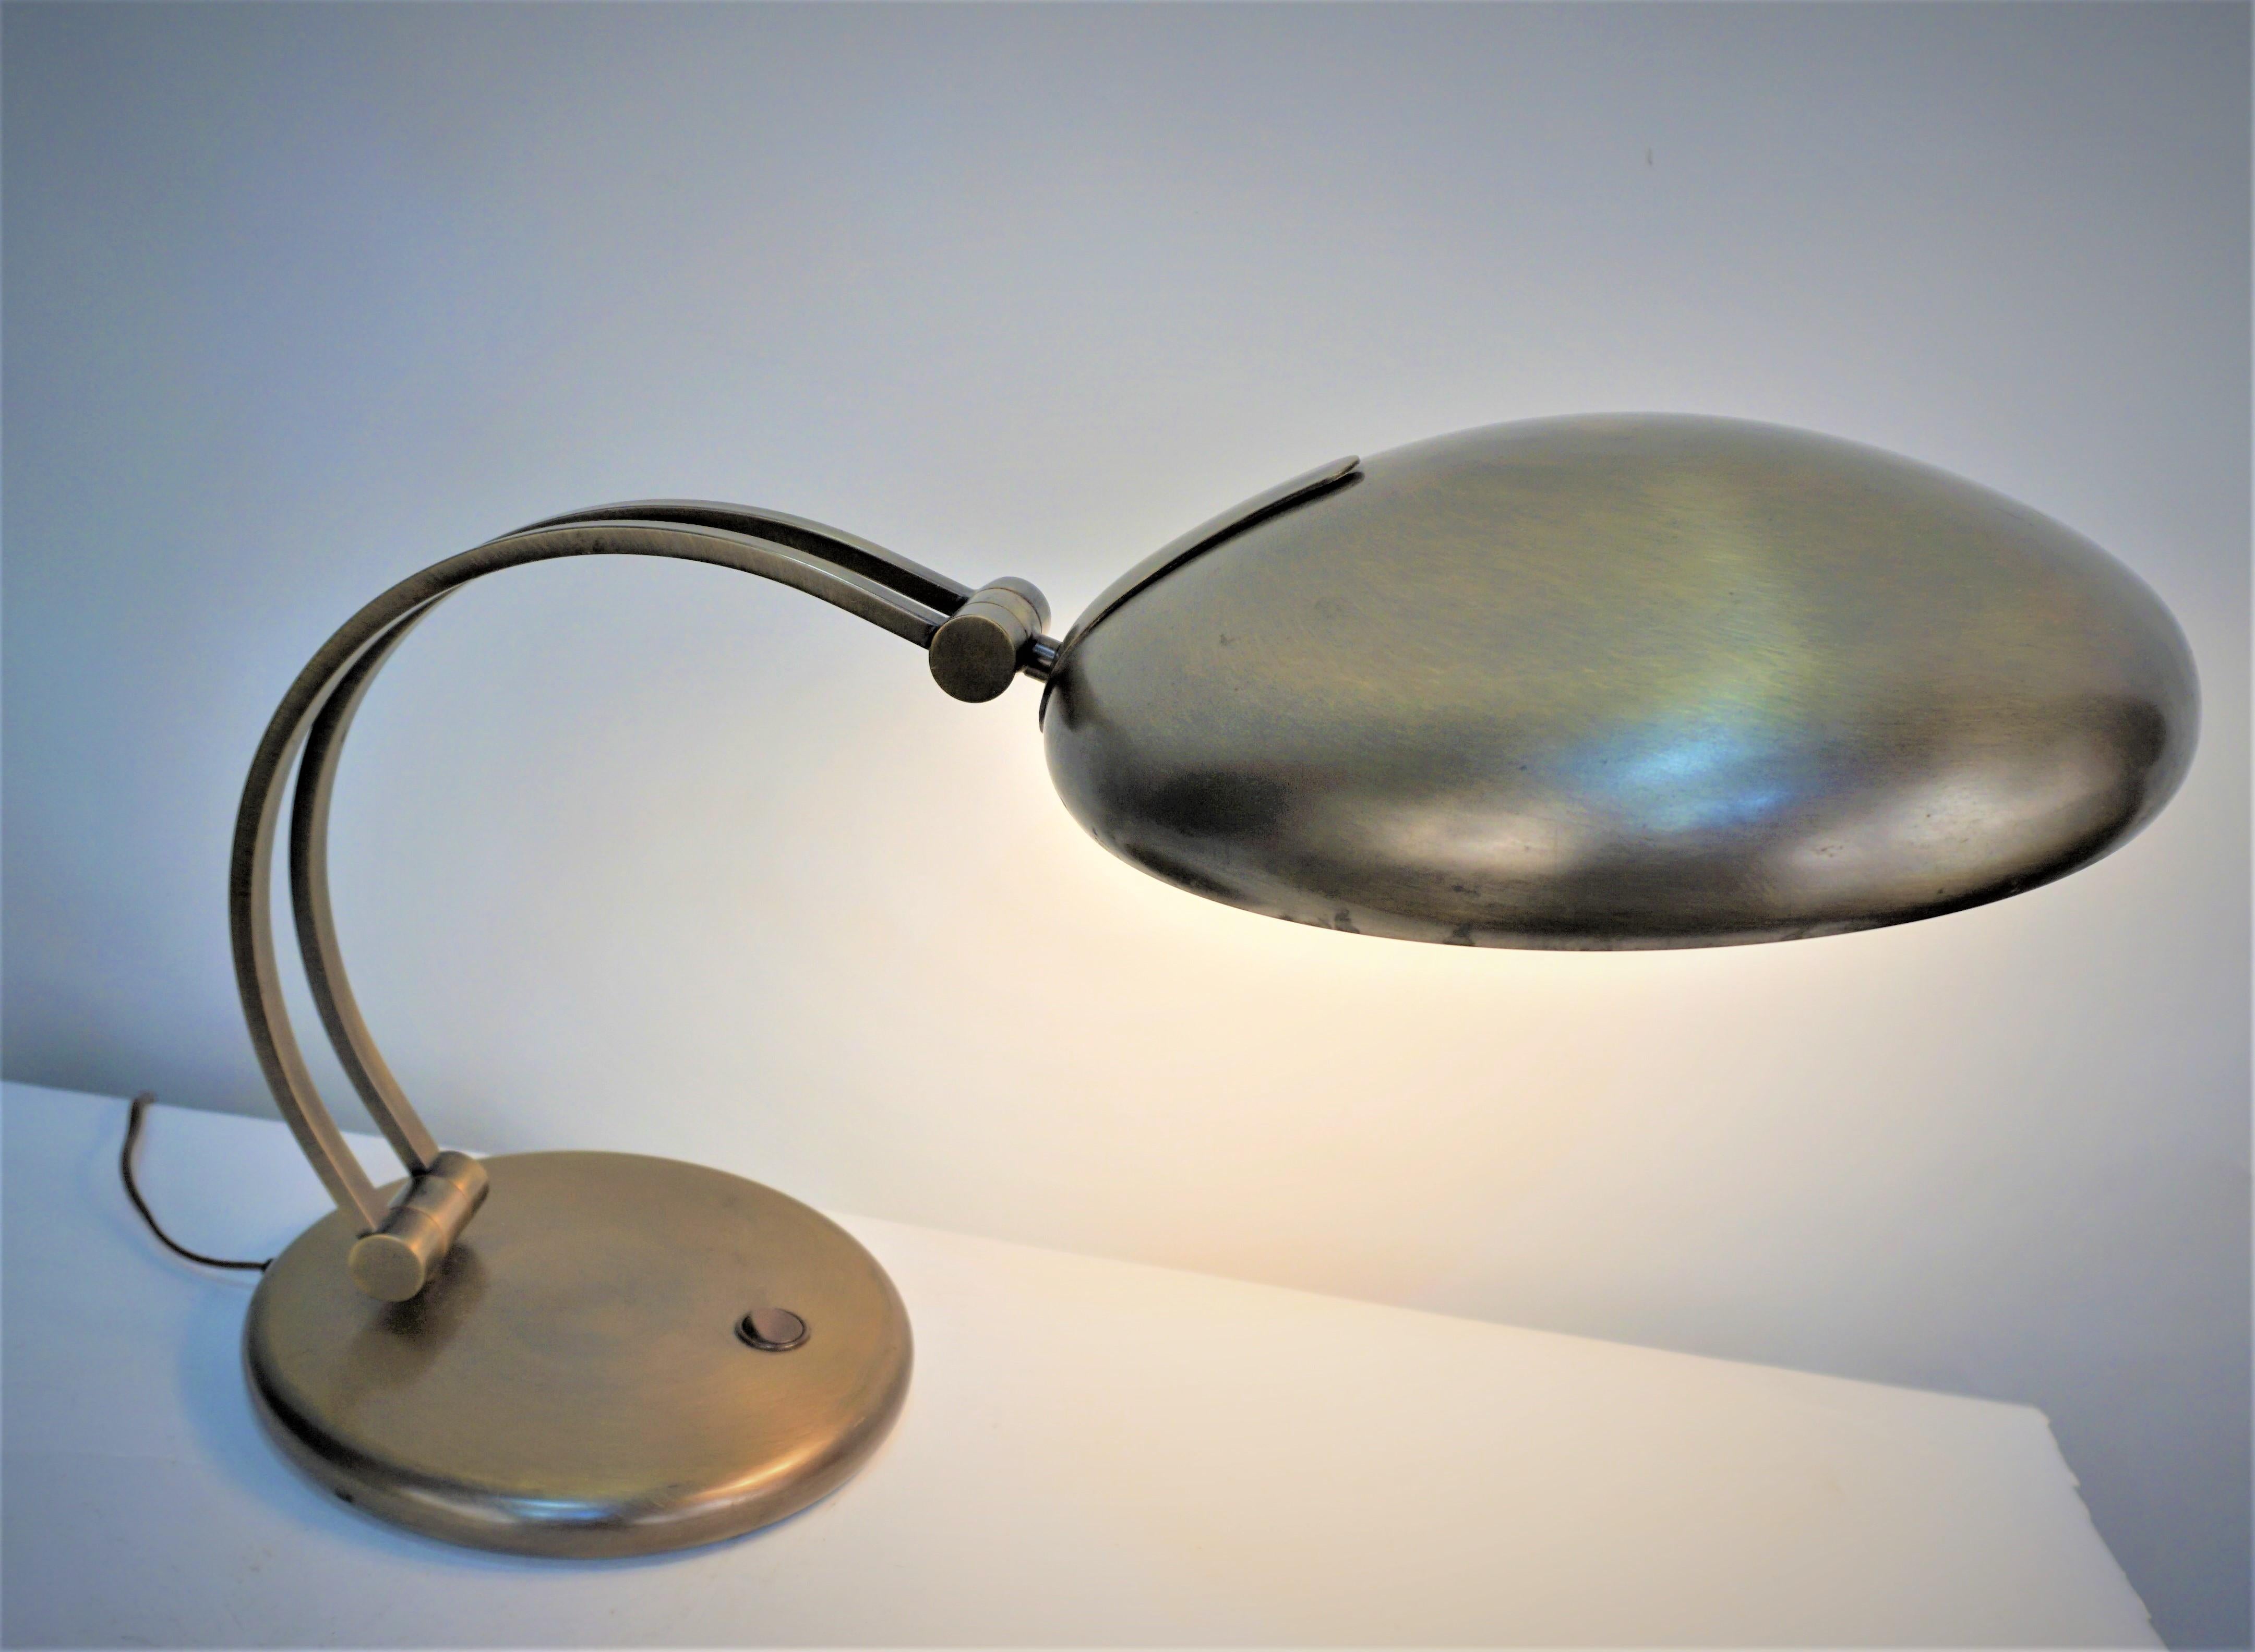 Bronze höhenverstellbare Arm und Schirm Schreibtischlampen.
Die Messung kann nicht perfekt sein, da der Arm verstellt wird.  